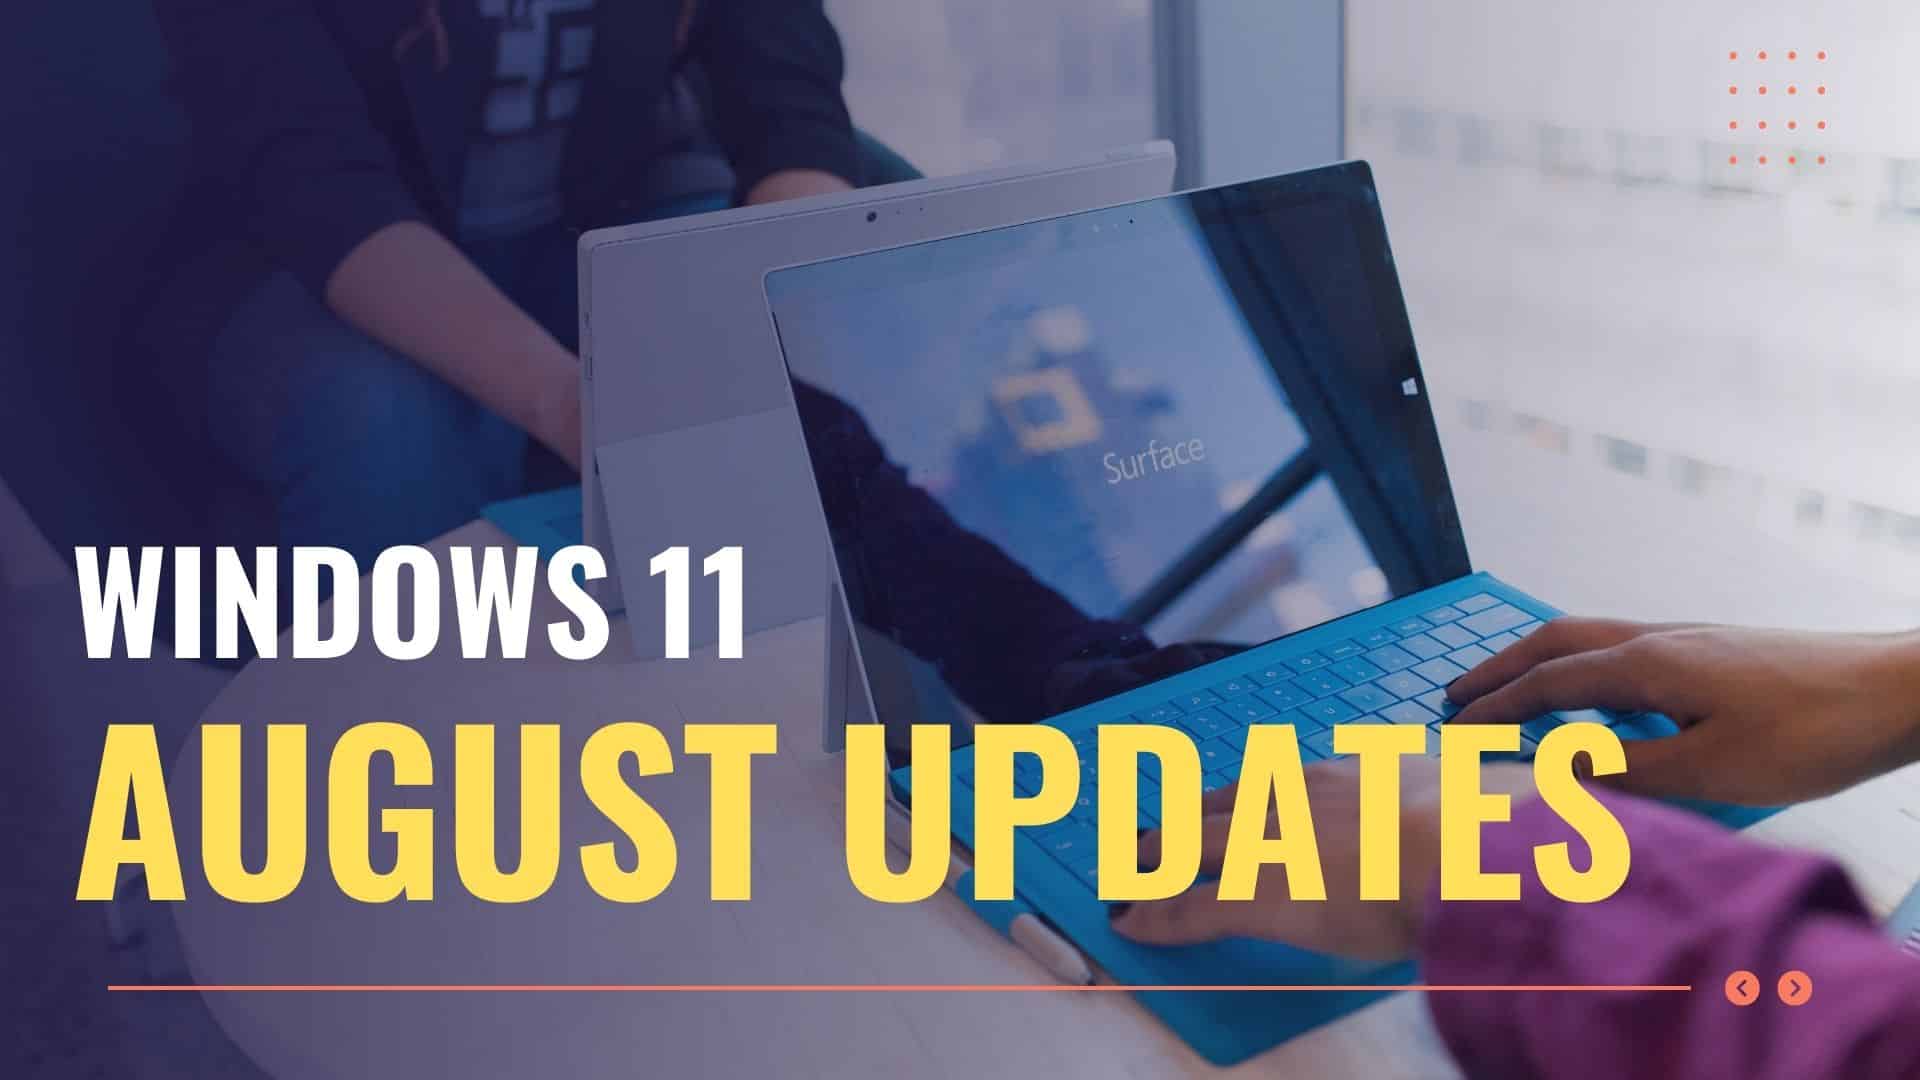 Windows 11 August Updates